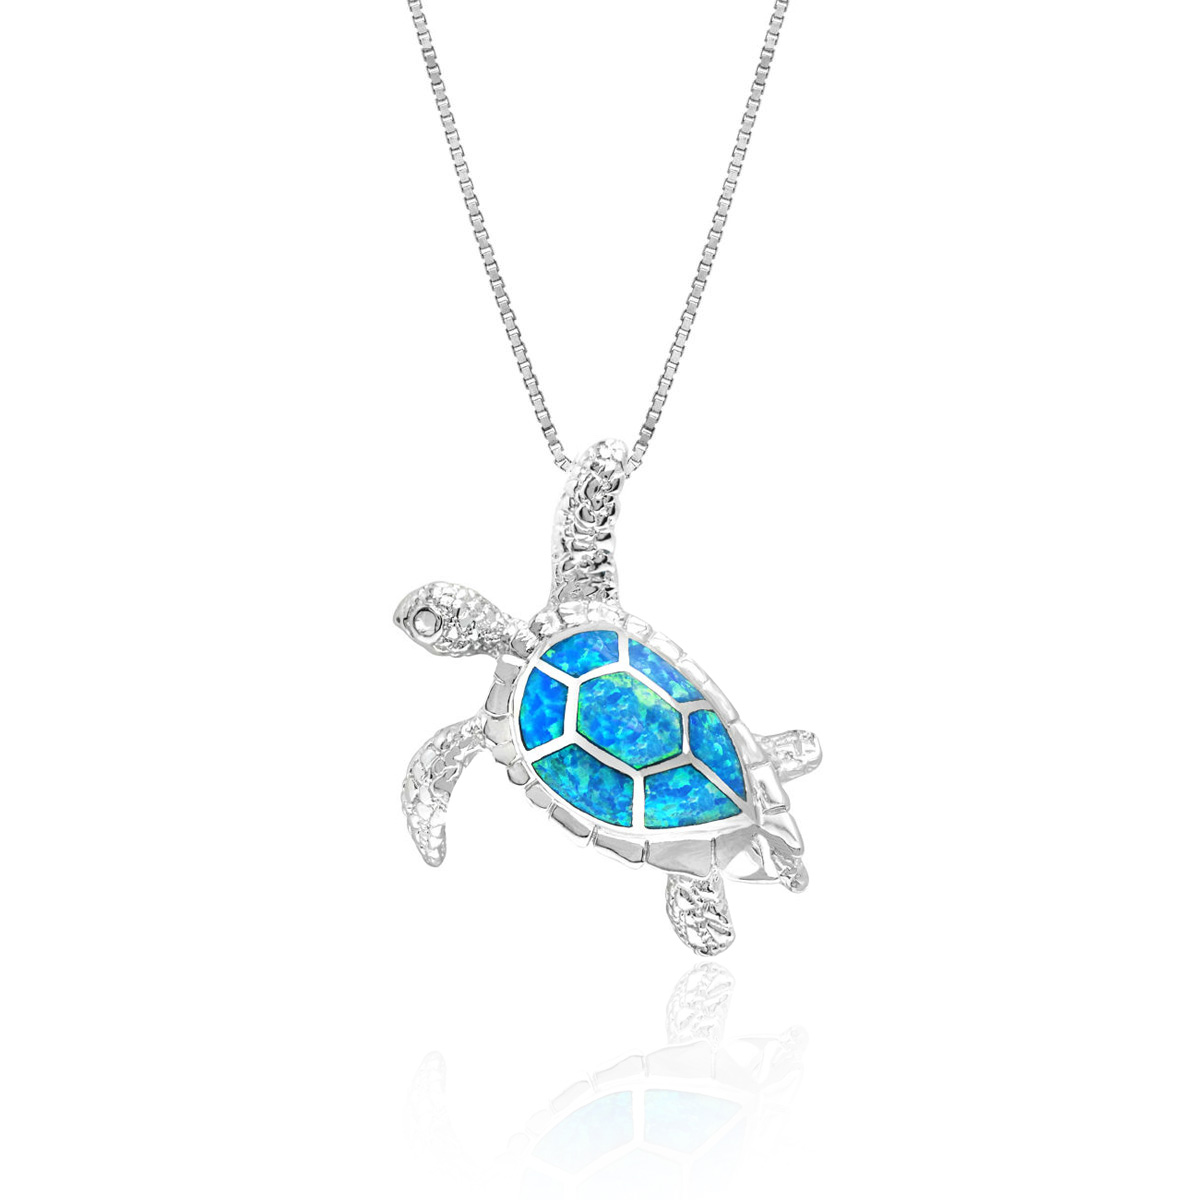 Cute Fire Opal Sea Turtle Pendant Choker Chain Necklace Women Jewelry Gift BR